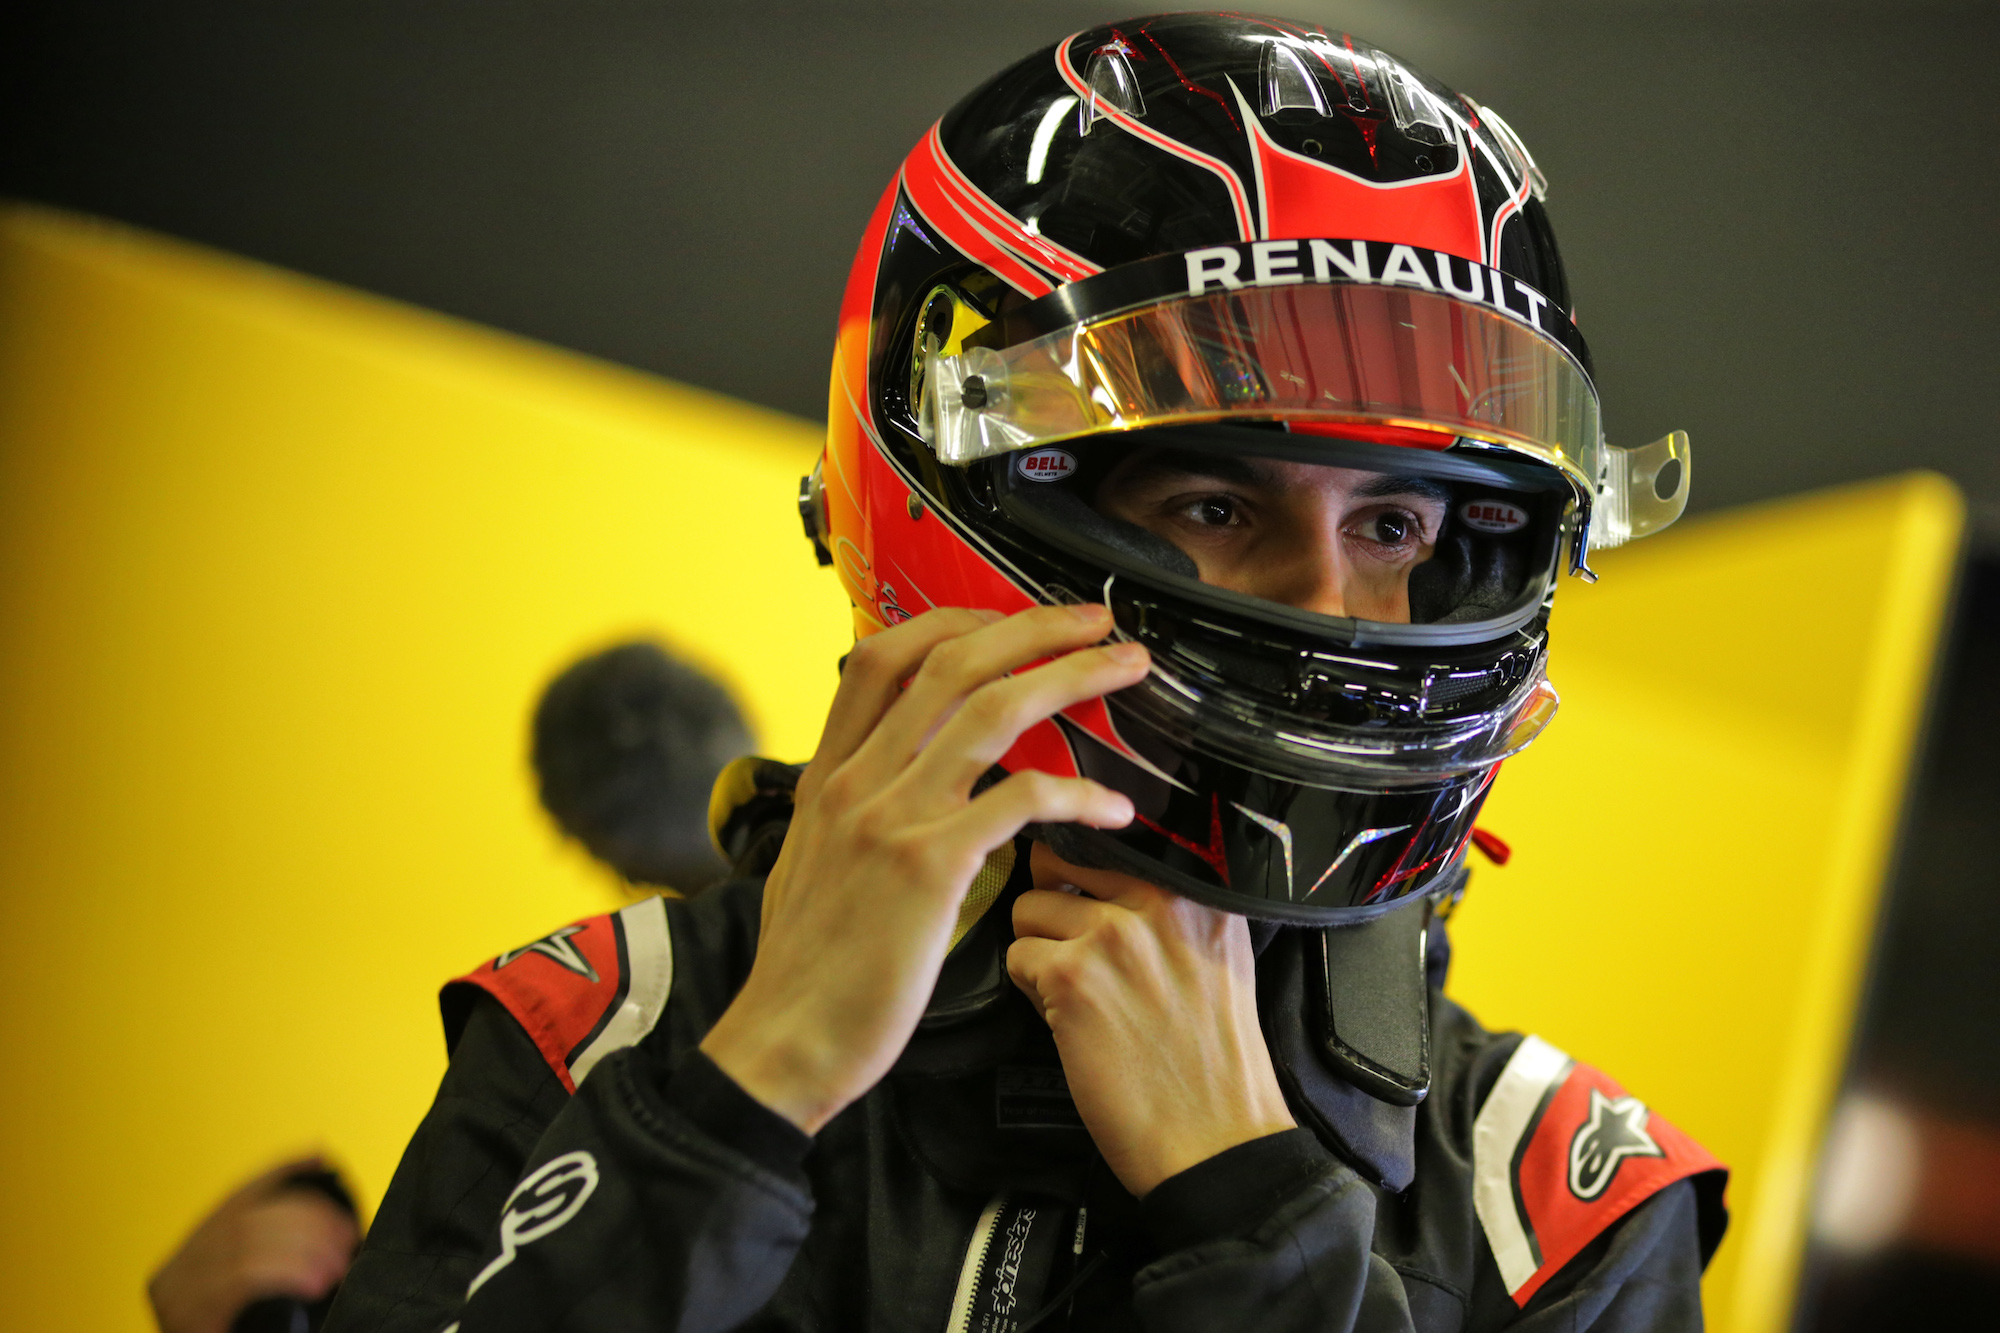 Esteban Ocon (FRA) Renault F1 Team.
03.12.2019.